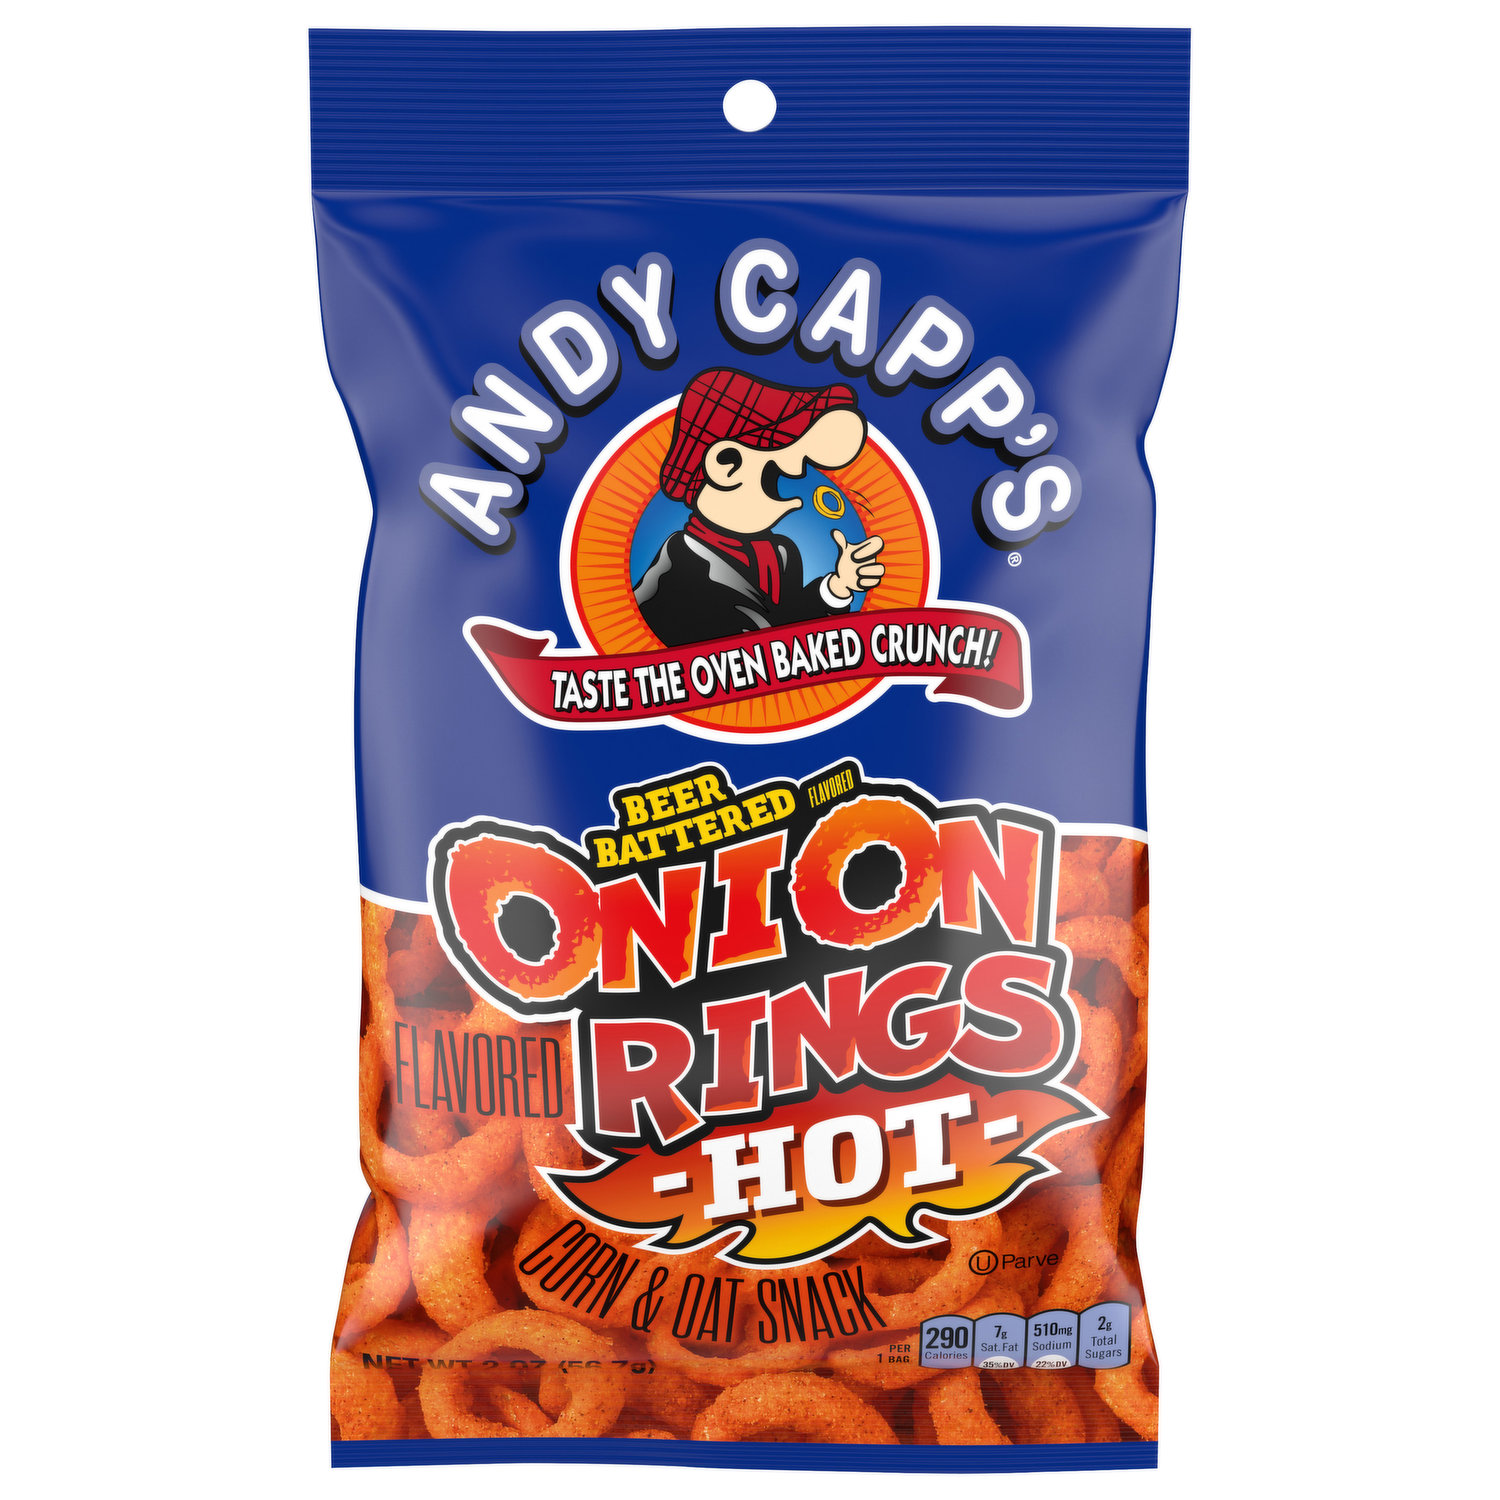 Andy Capps Hot Fries, Big Bag Corn & Potato Snacks - 8 oz